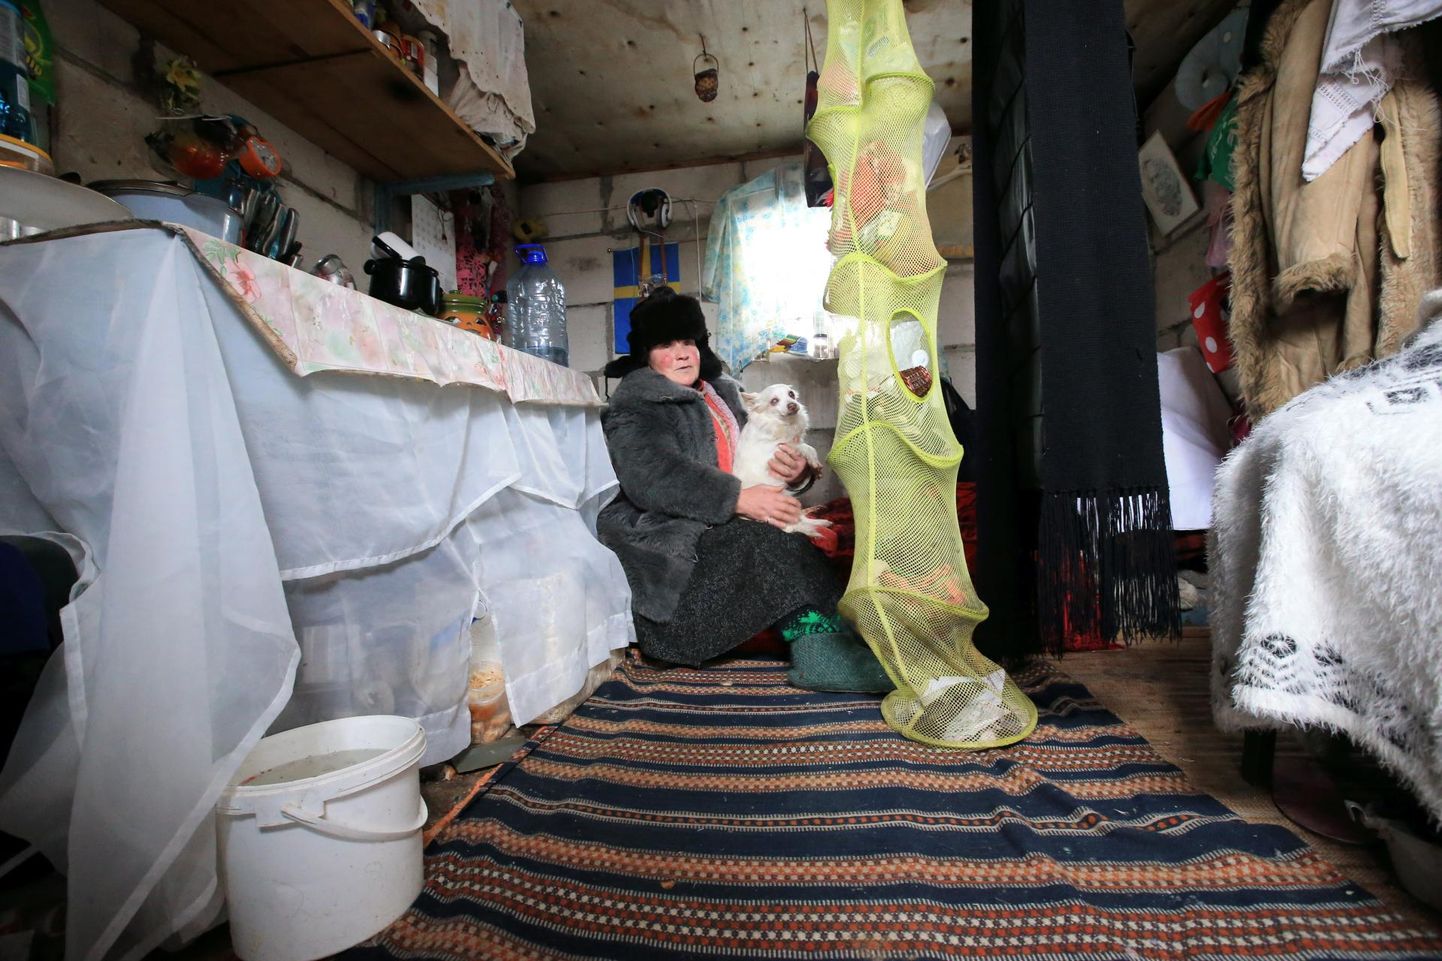 Julia Tšumakova elab kuuris koos väikese koeraga. Sooja saamiseks tuleb tal pugeda tekikuhjade alla.